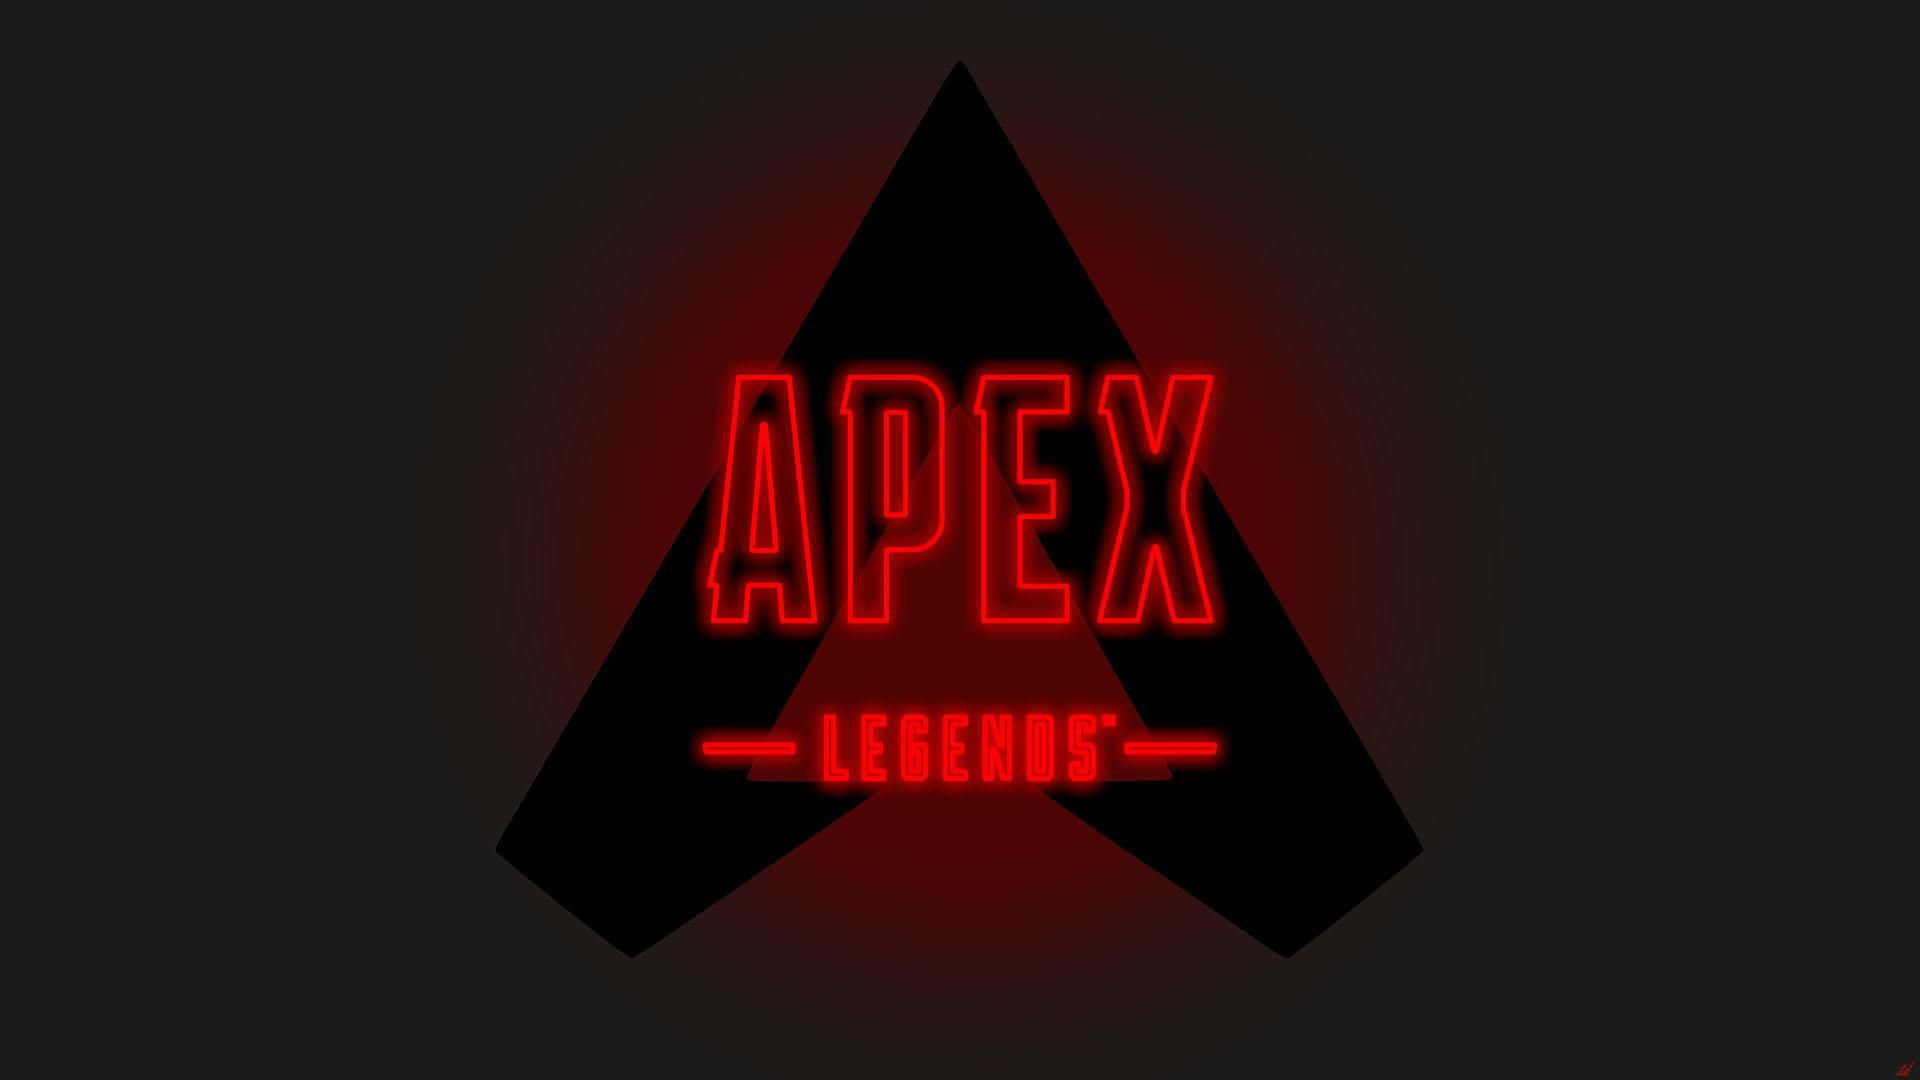 Logotipode Apex Legends En Neón Con Texto. Fondo de pantalla